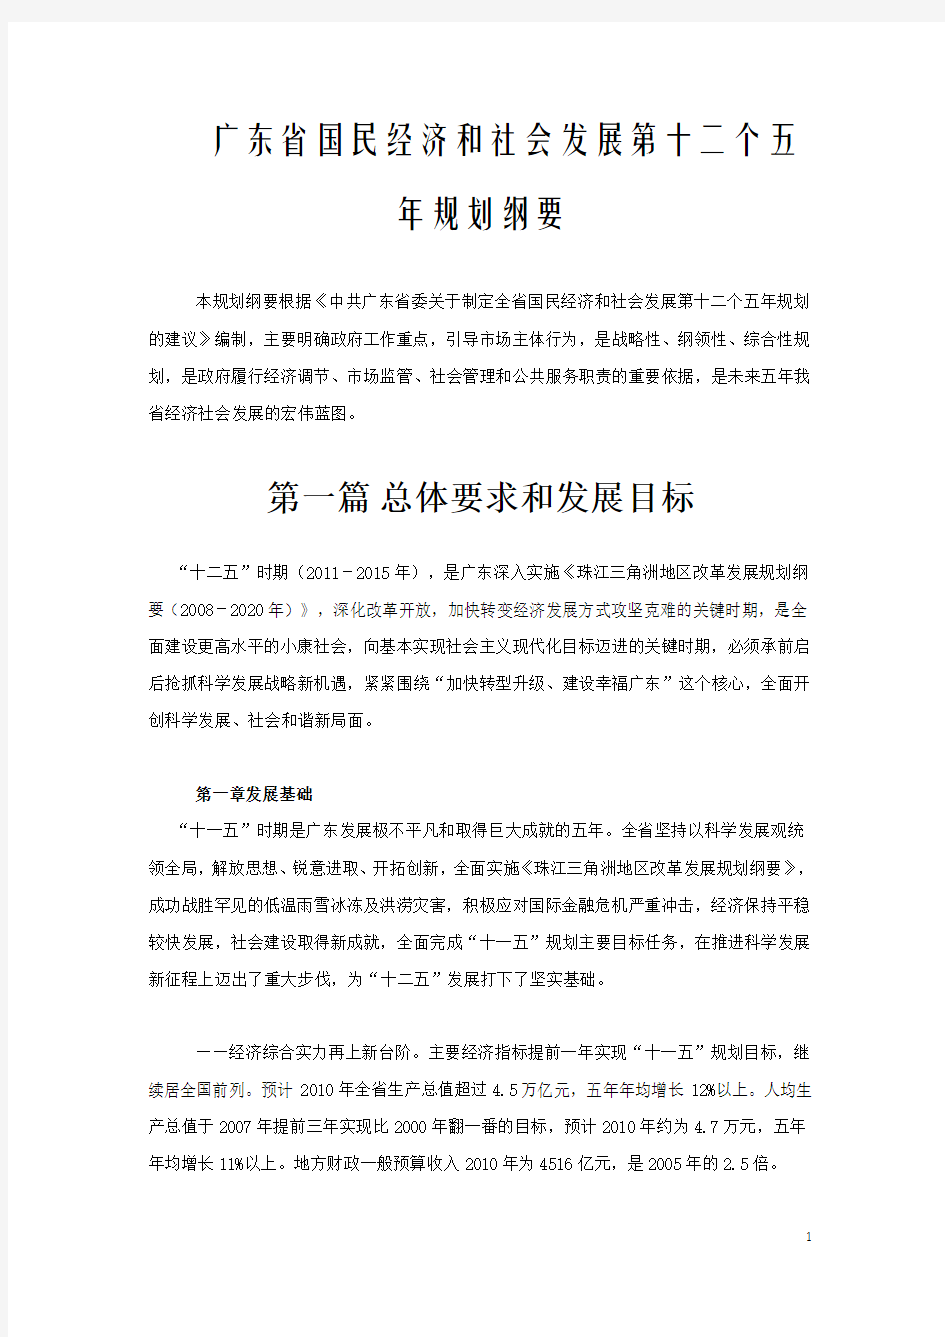 广东国民经济和社会发展第十二个五年规划纲要 (全文)